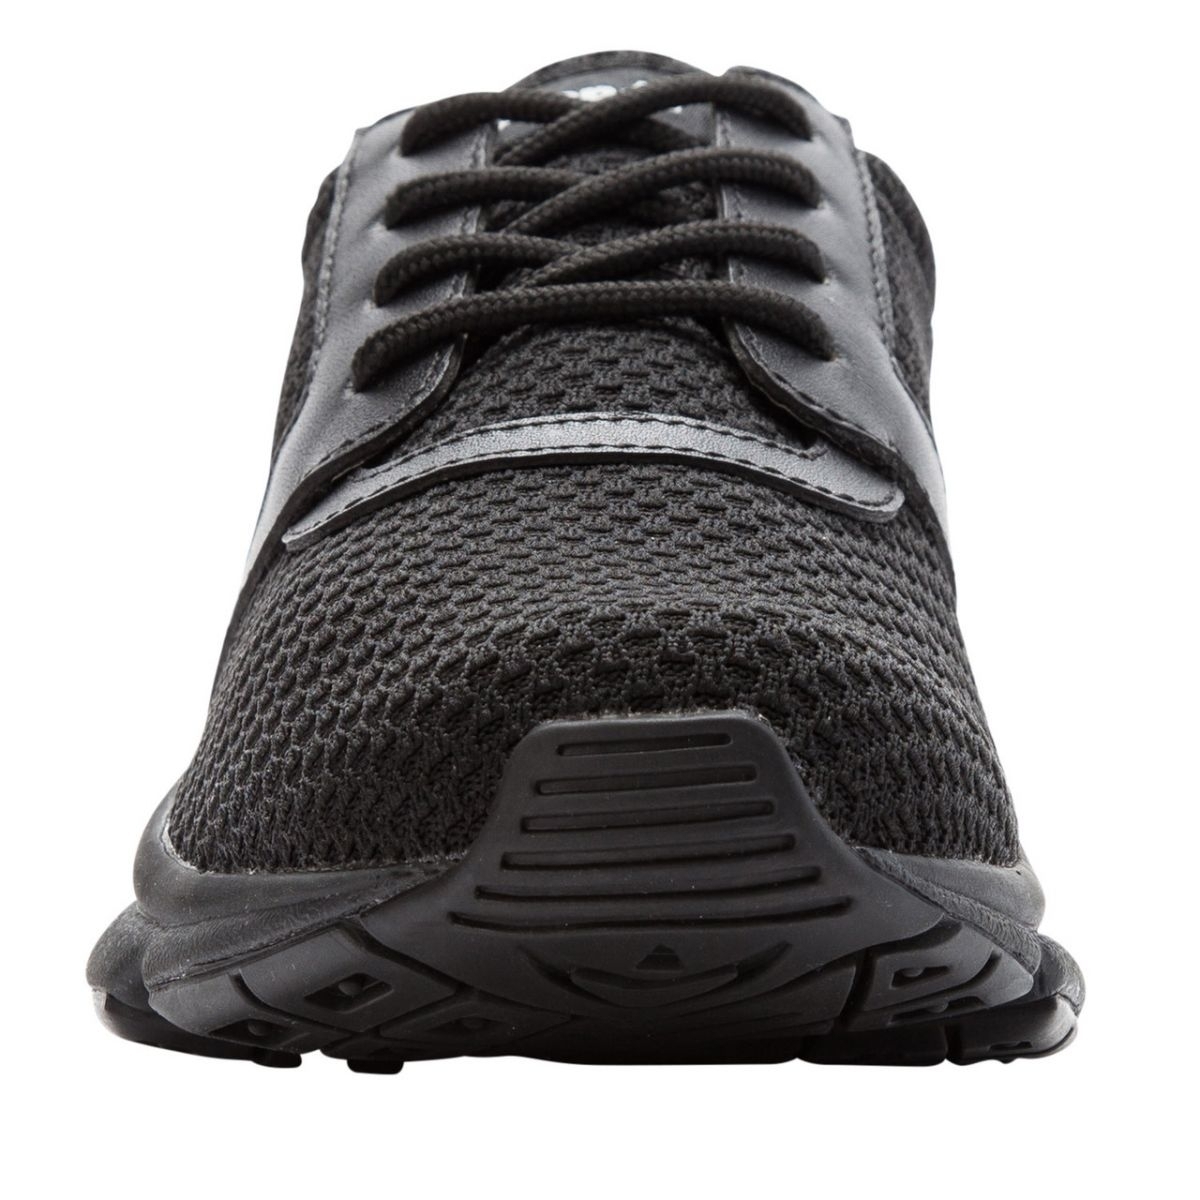 Propet Women's Stability X Walking Shoe Black - WAA032MBLK BLACK - BLACK, 5.5 Wide